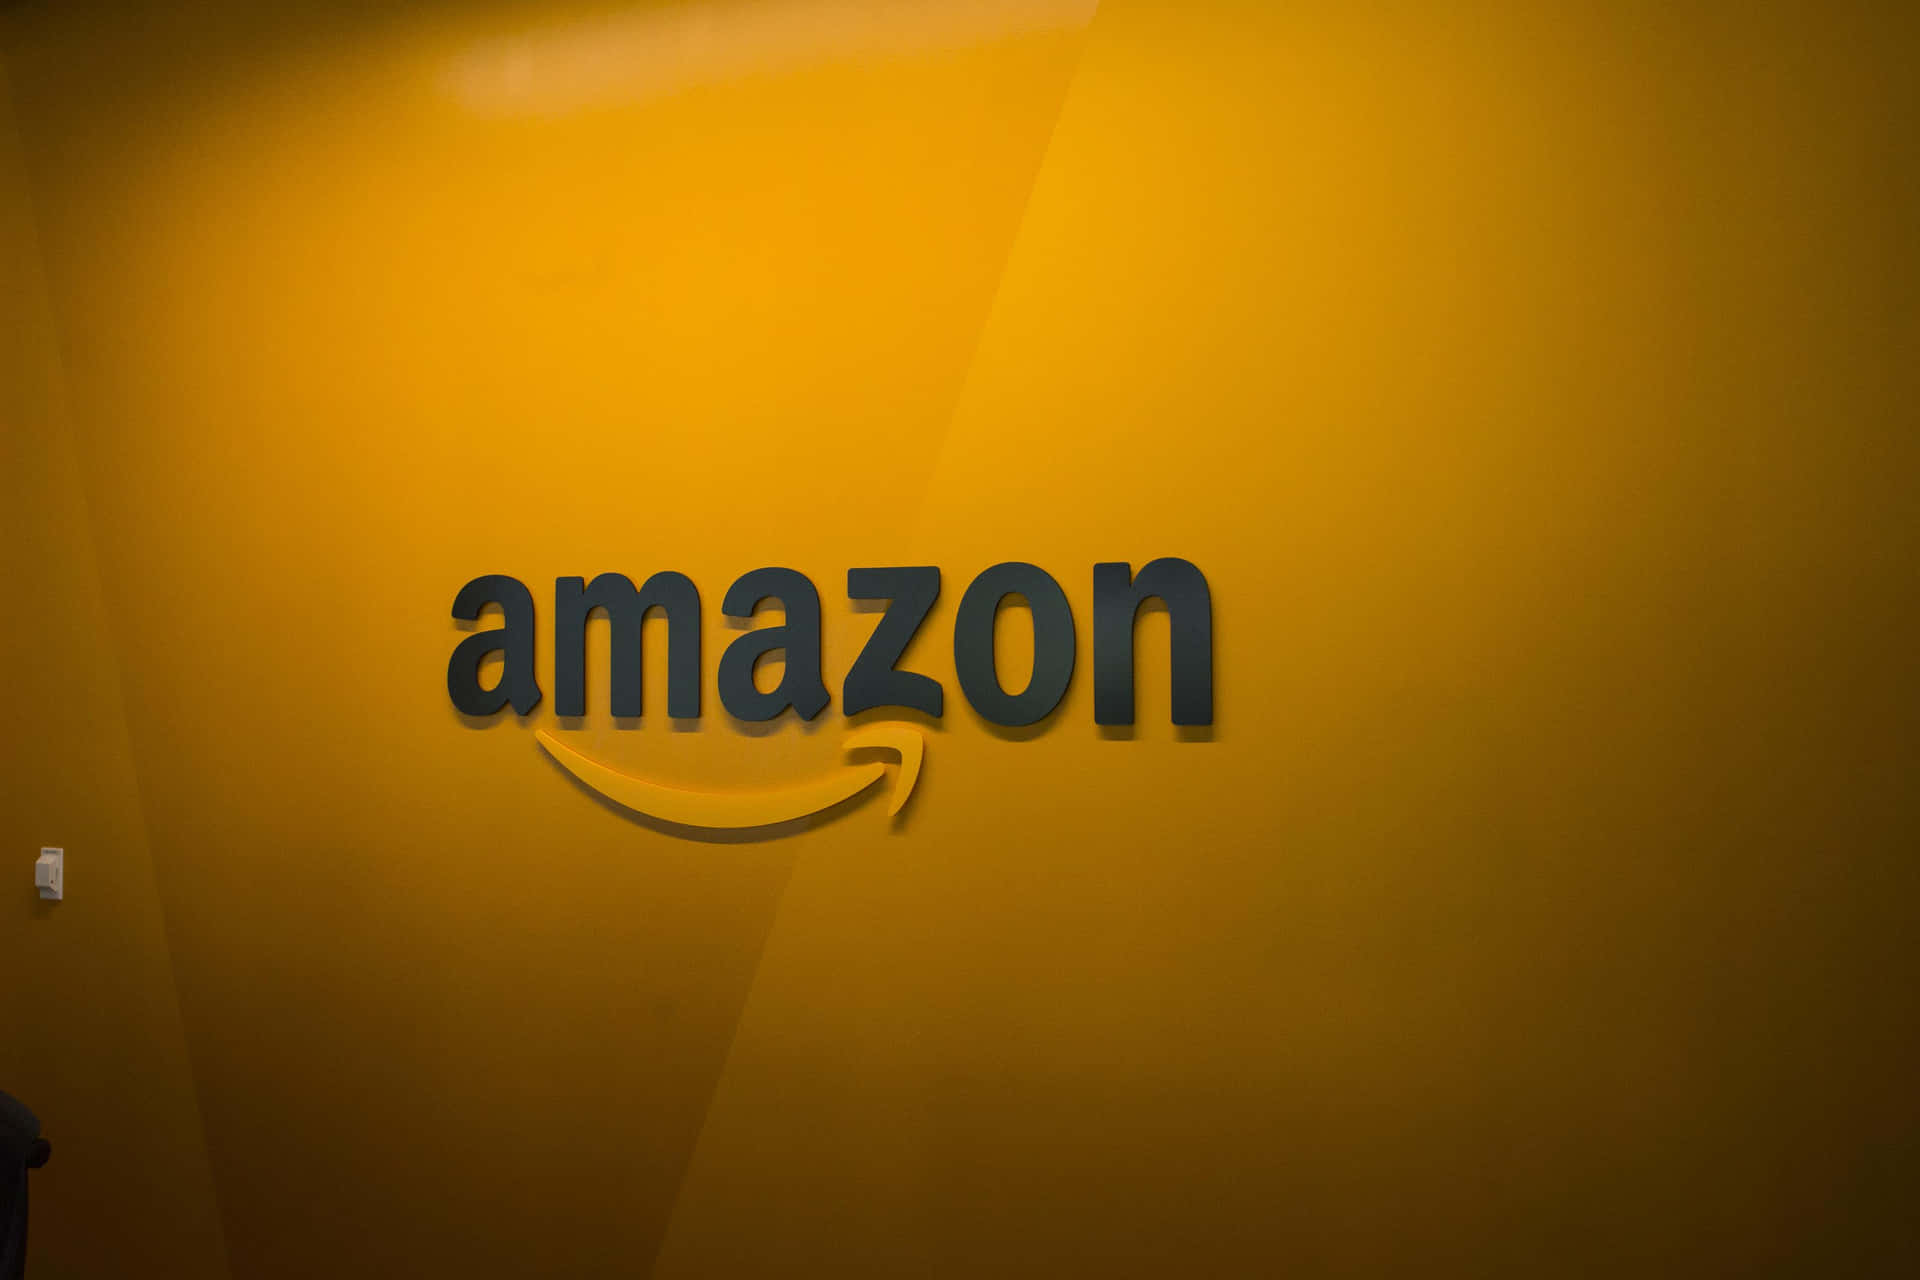 Fondode Pantalla Con El Logotipo De Amazon Uk En Amarillo-anaranjado. Fondo de pantalla